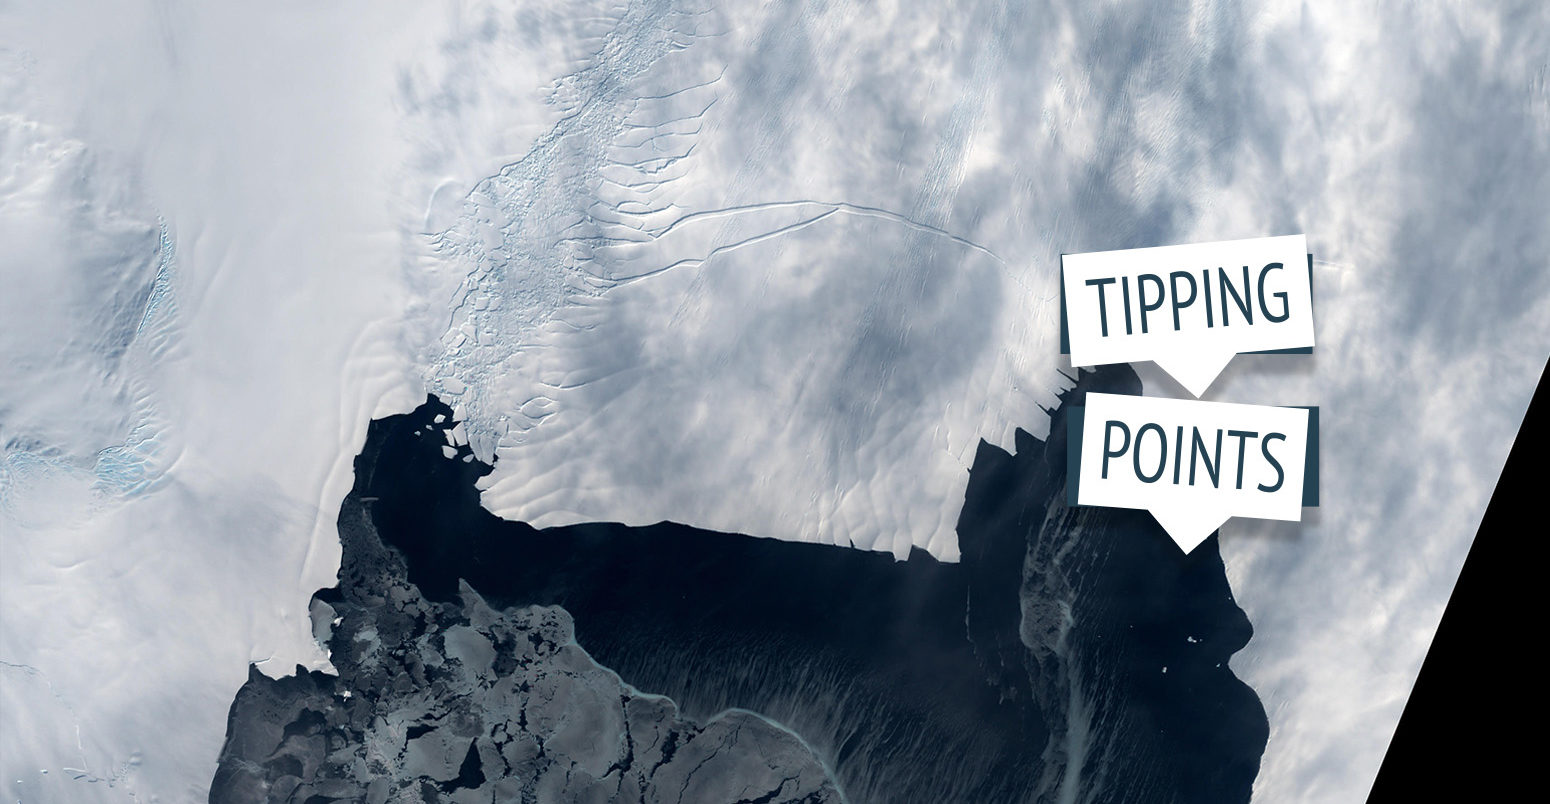 卫星图像的松岛冰川在南极洲西部。信贷:NG图片除股票的照片。